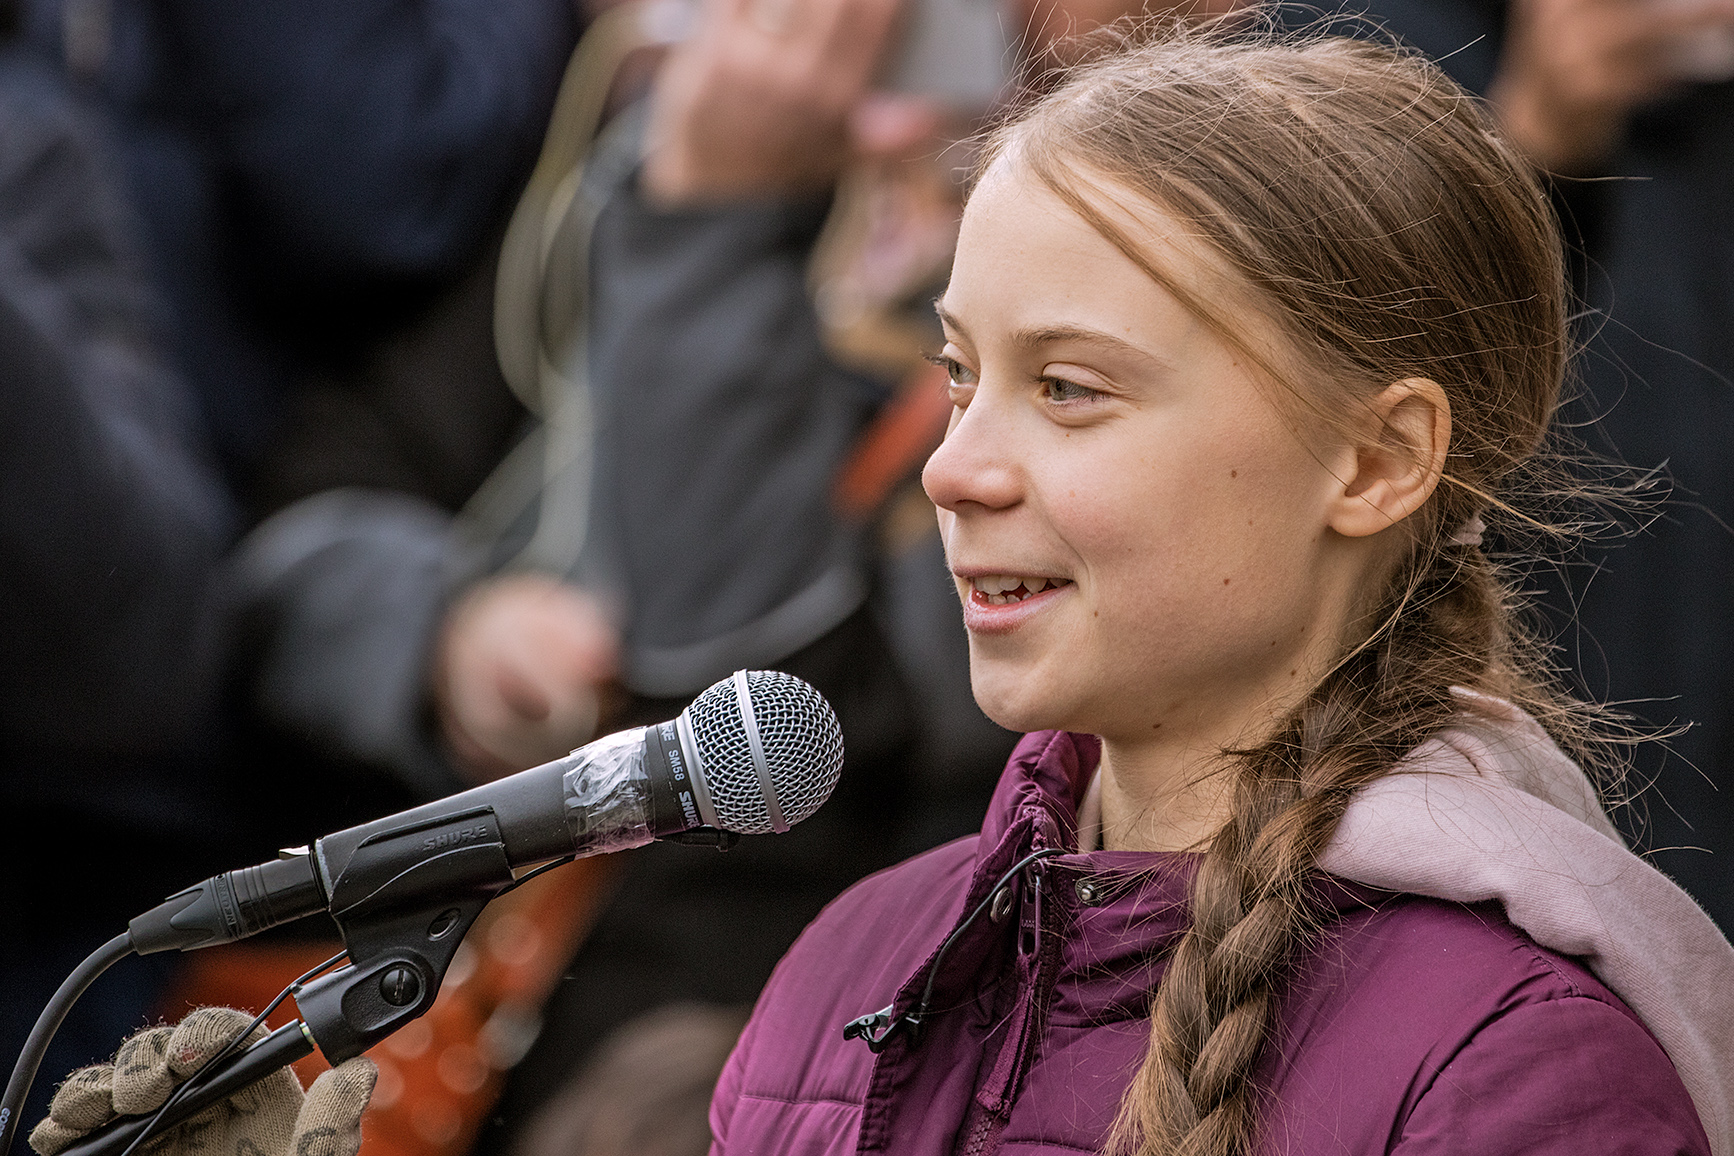 Cosa ha detto Greta Thunberg a Milano oltre al “bla bla bla”